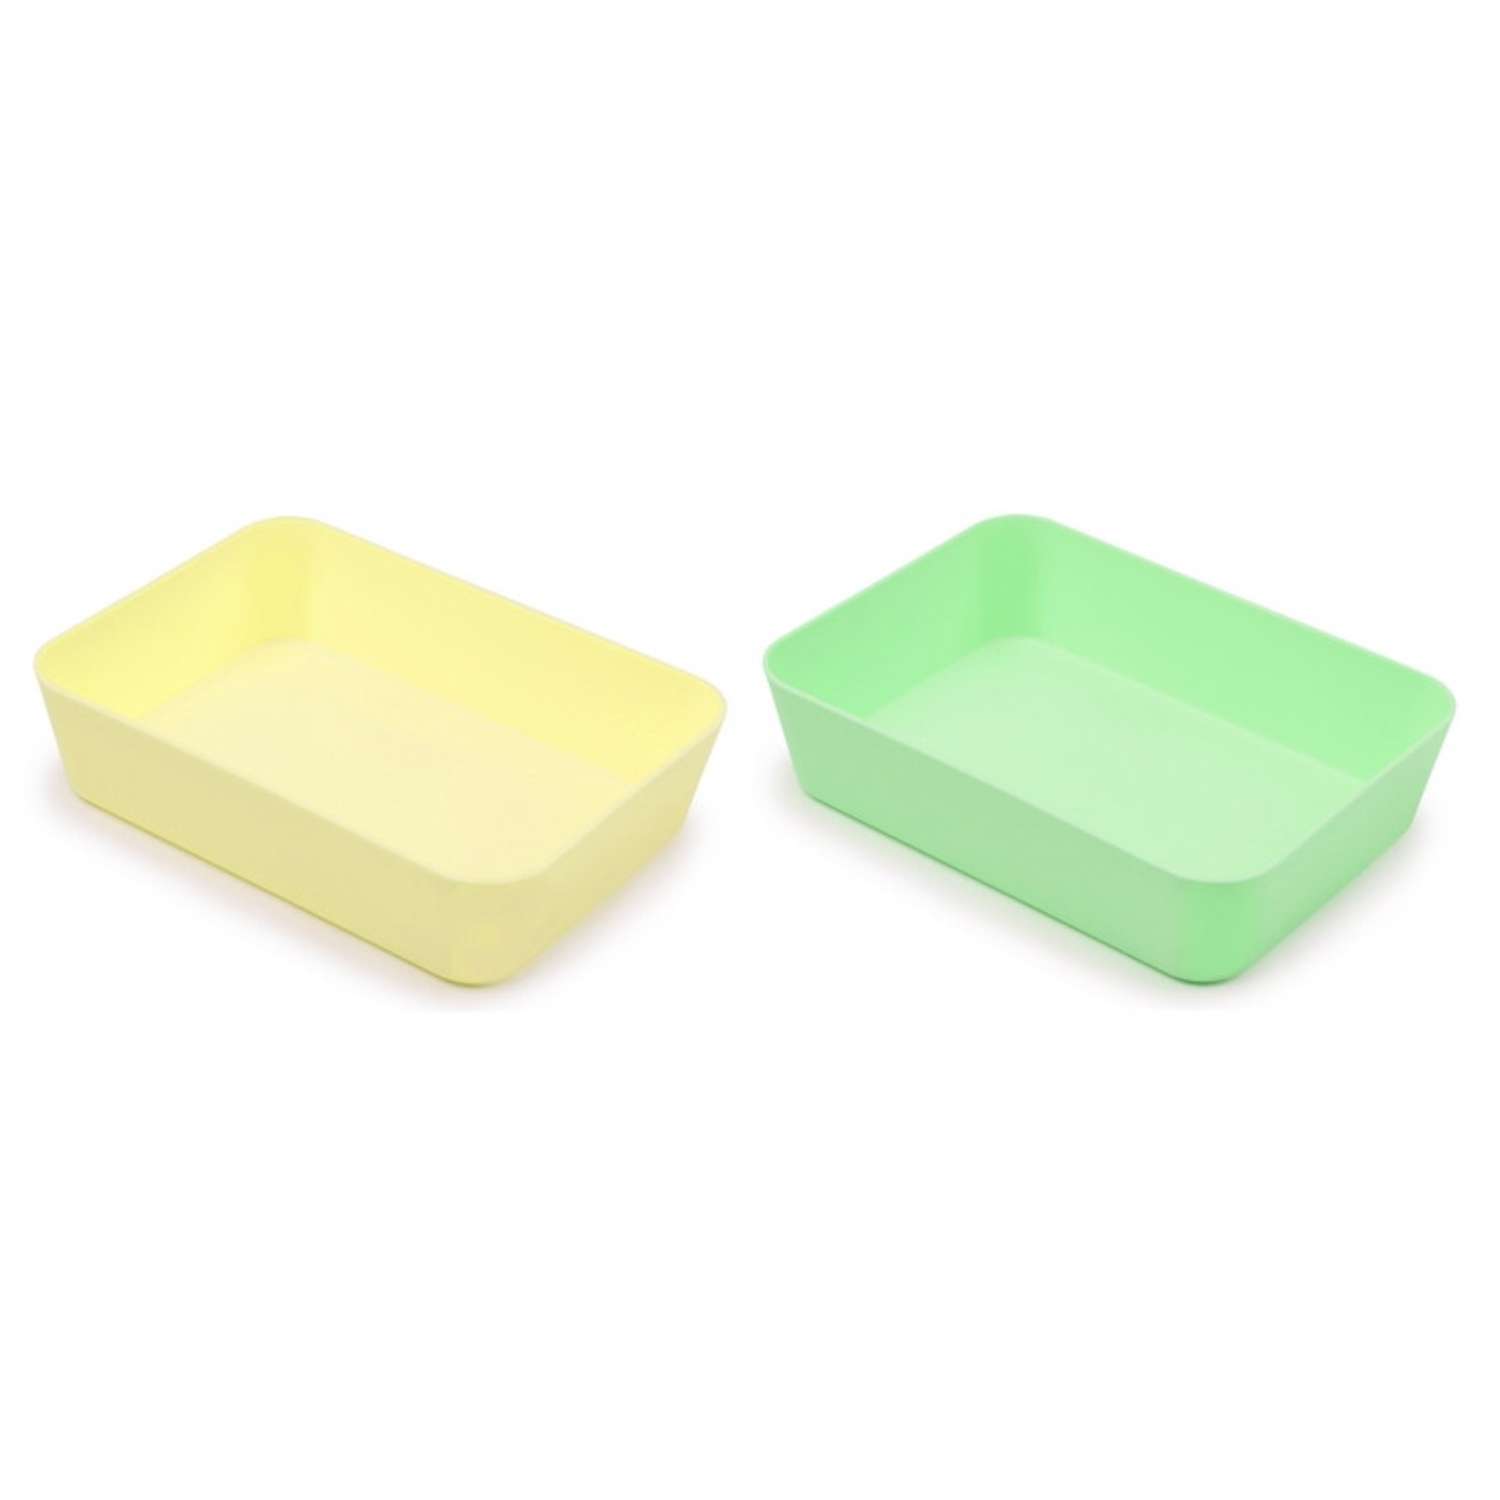 Лоток канцелярский Attache для канцелярских мелочей Selection желтый и зеленый 3 упаковки по 2 штуки - фото 1